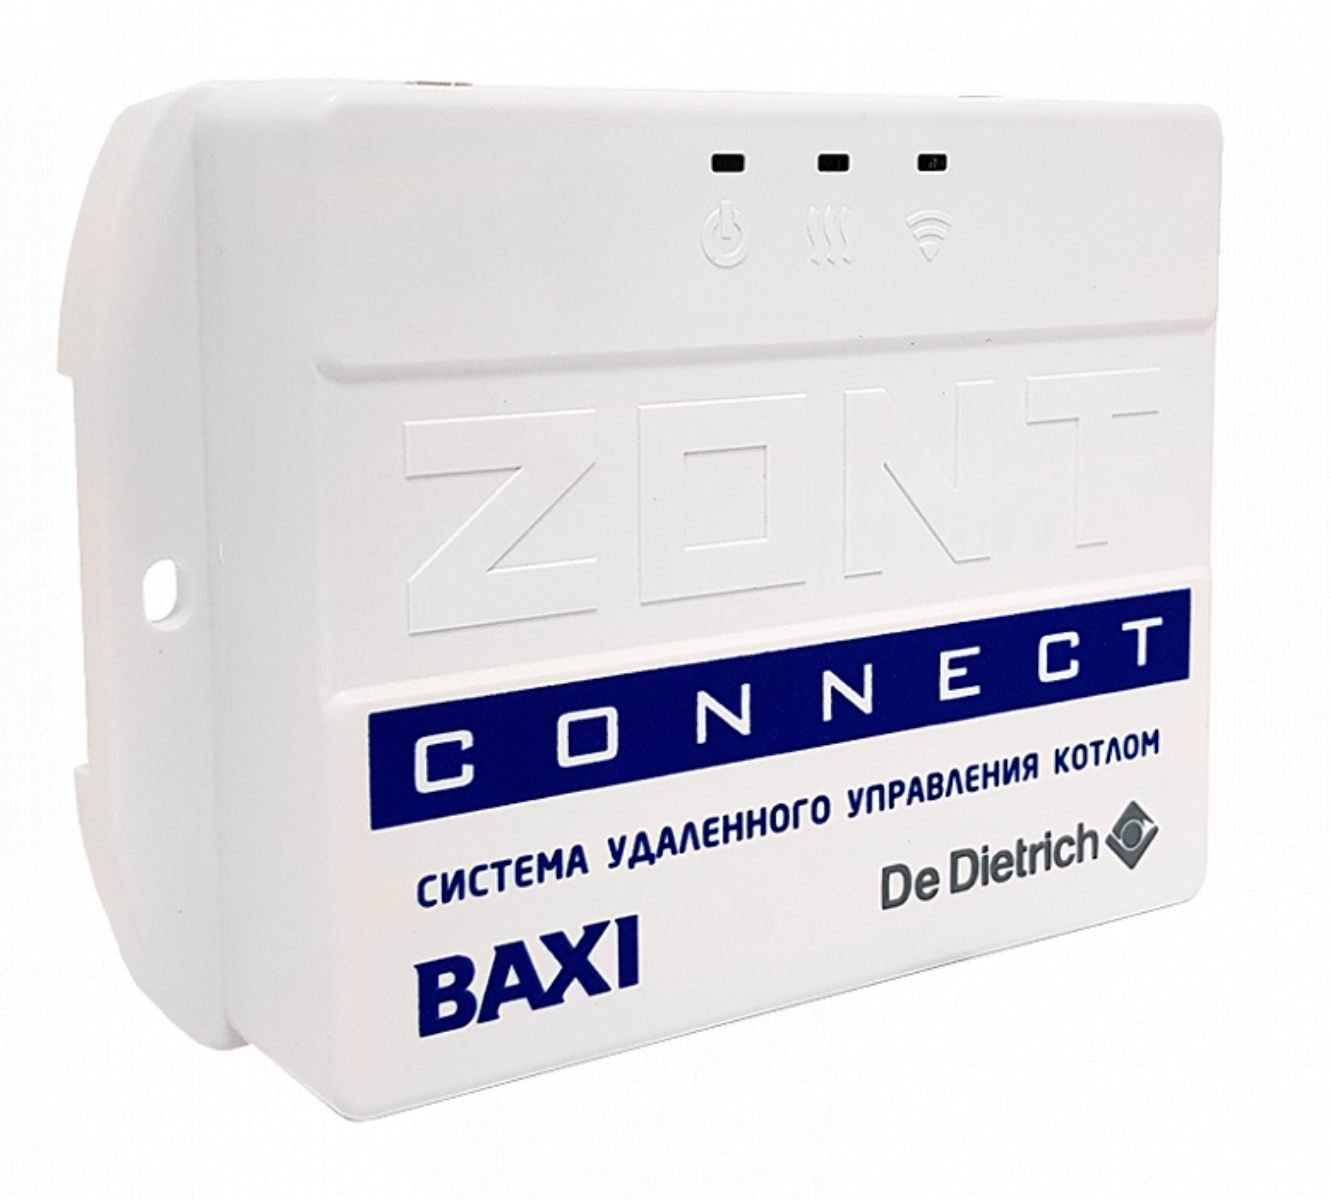 Zont котел baxi. Zont connect Baxi. Система удаленного управления котлом Baxi Zont connect. Baxi Zont connect ml 00003824. GSM модуль для котлов Baxi.